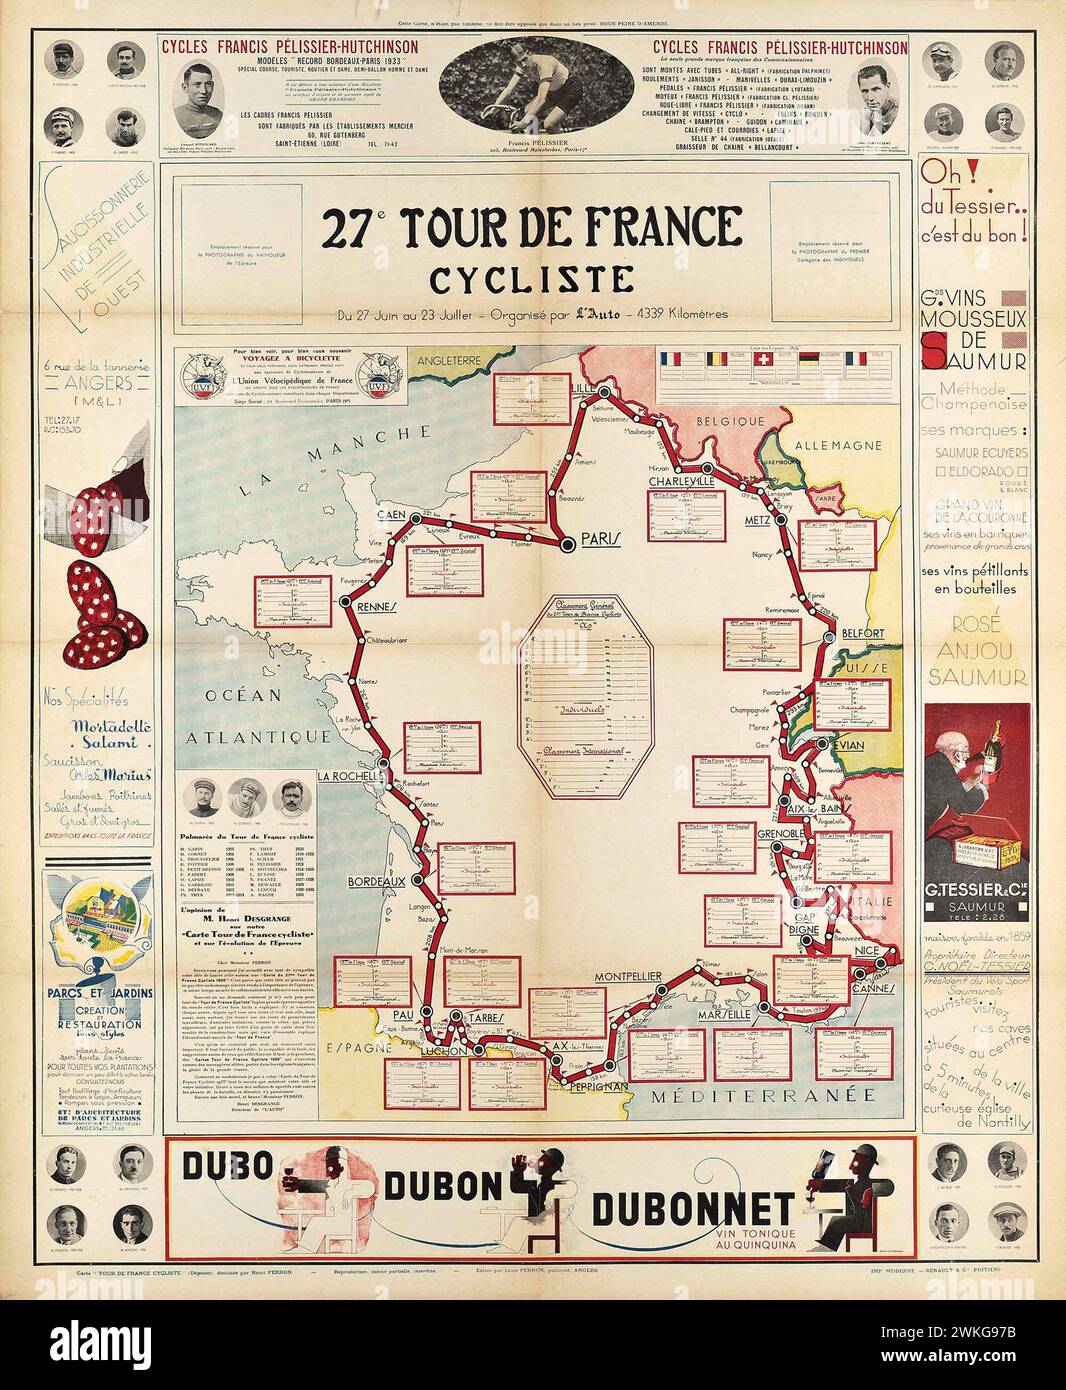 Affiche de voyage vintage pour le 27ème Tour de France. Avec Maps et publicité. années 1930 Banque D'Images